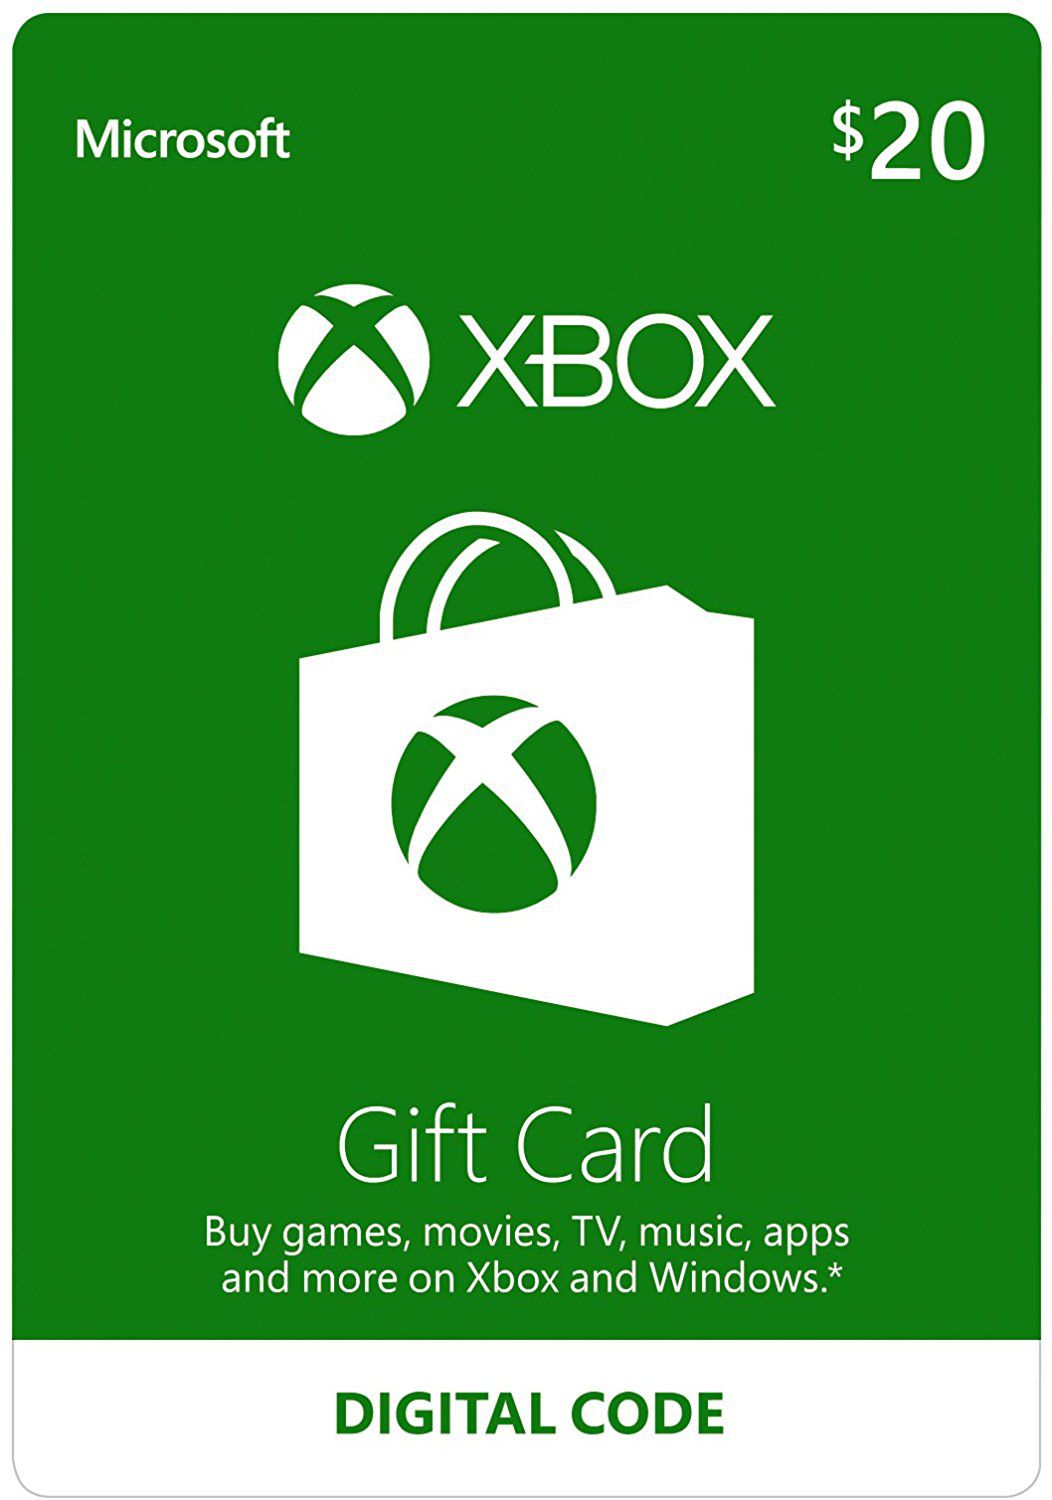 Comprar Cartao Microsoft Xbox Gift Card 20 Usa Zero3games - lojas americanas vendas de cartao robux